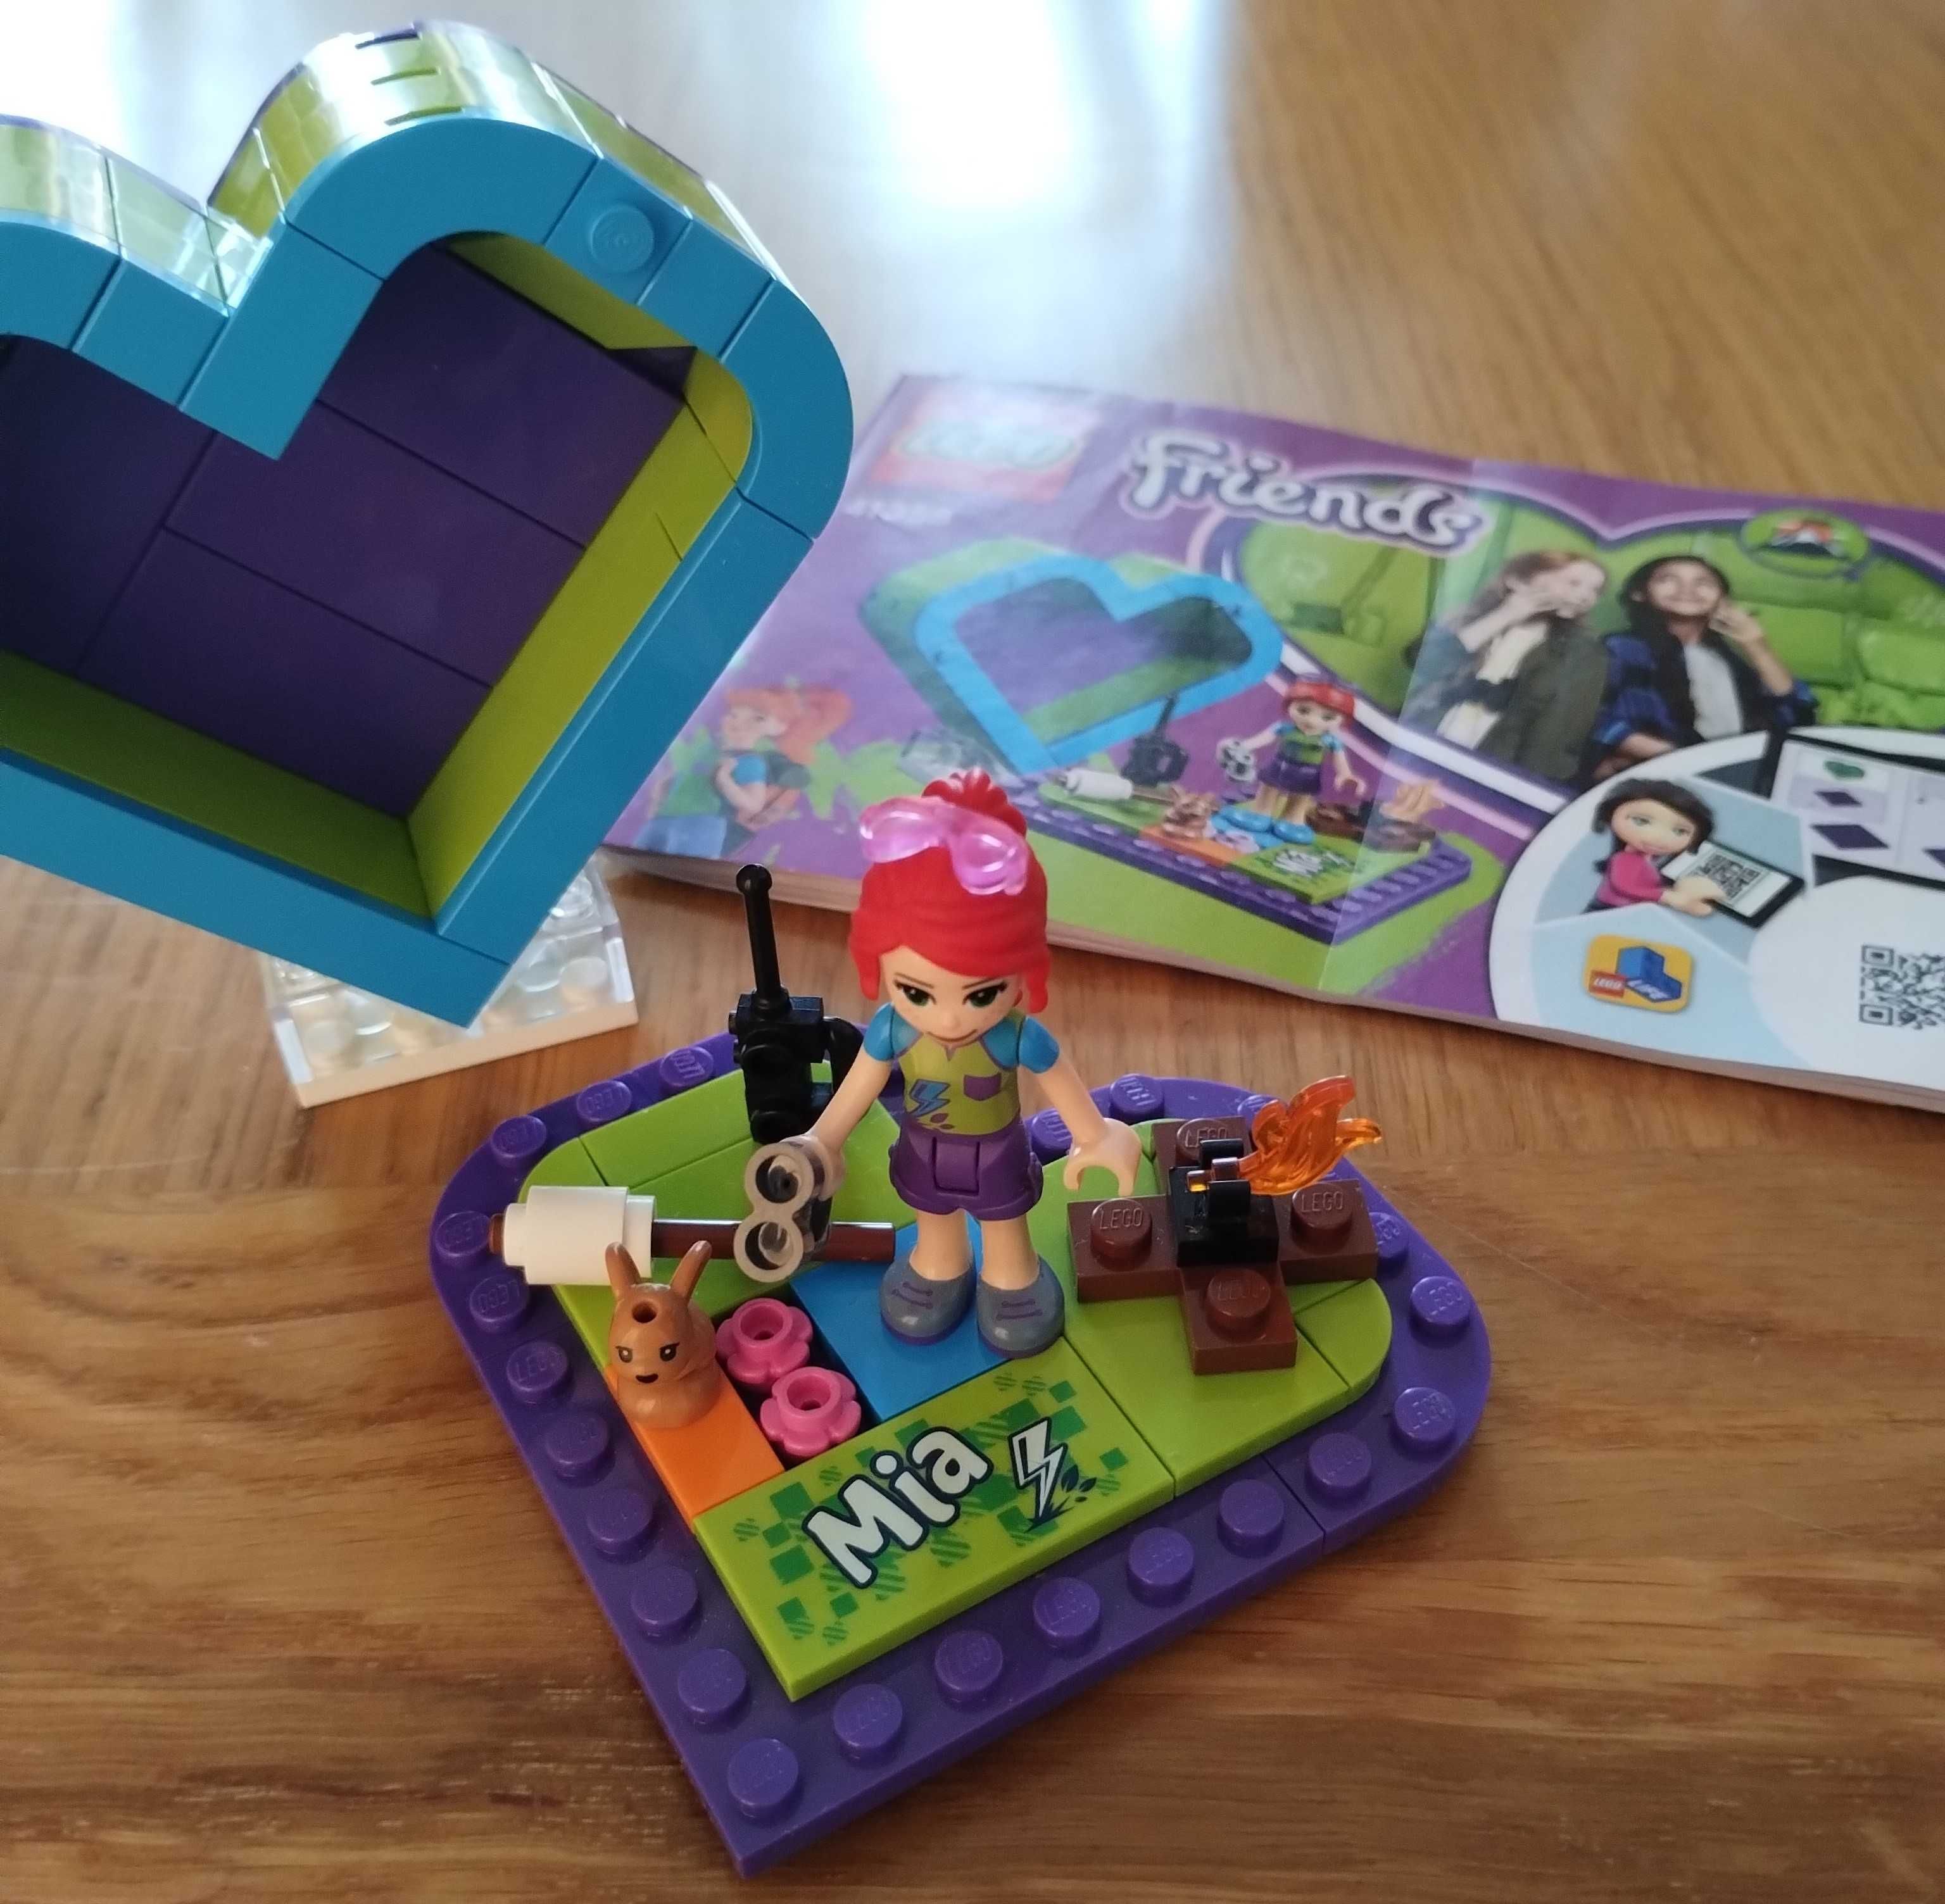 Lego Friends zestaw nr 41358 - Mia pudełko-serce